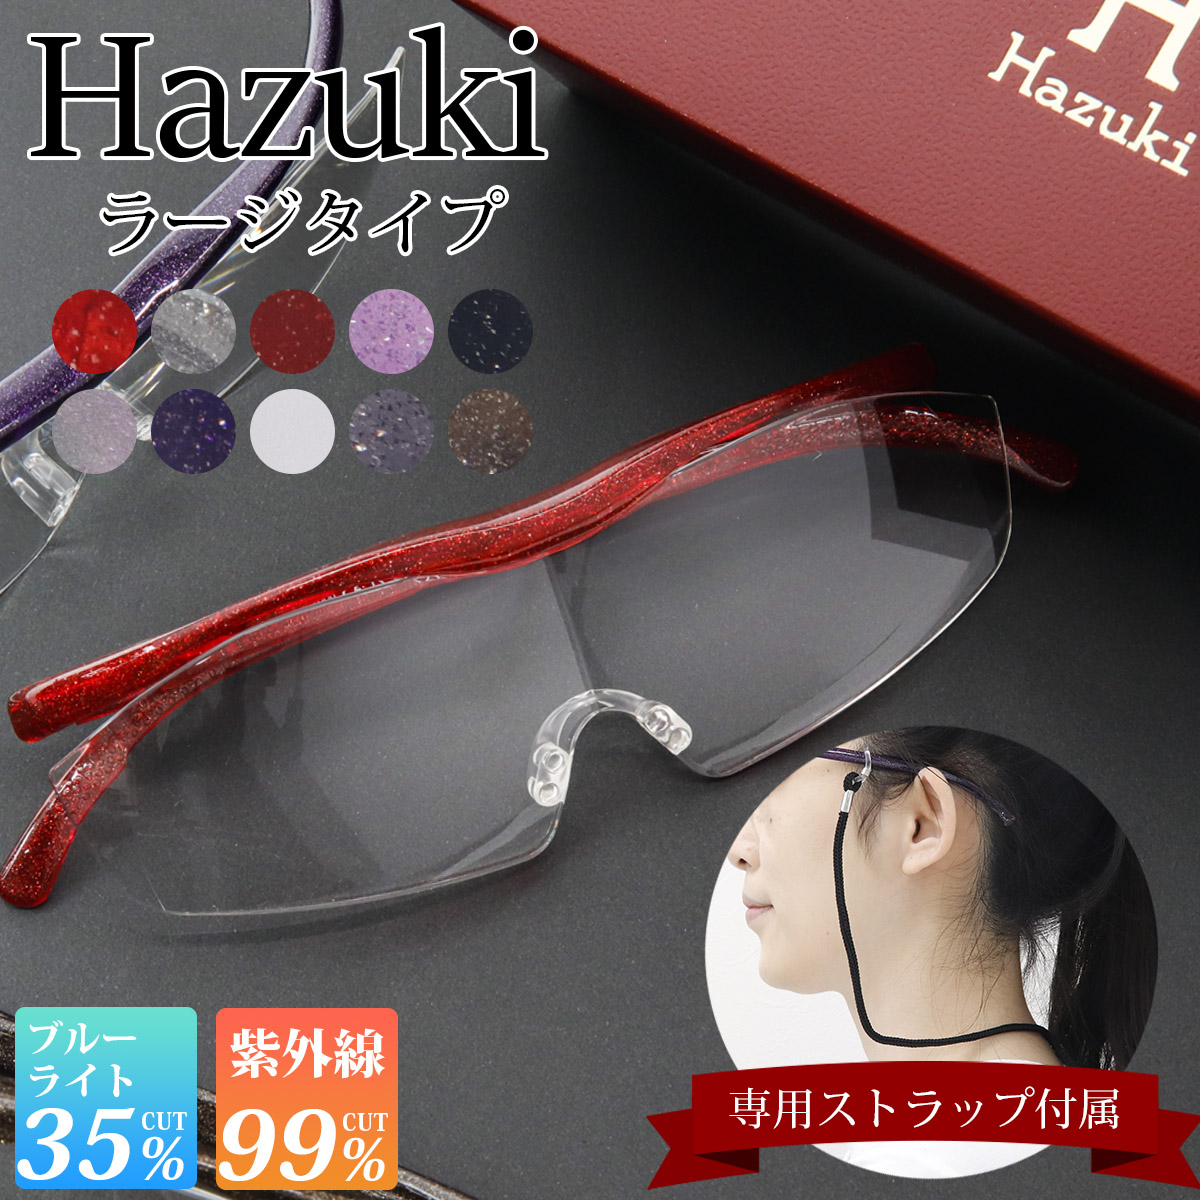 Hazuki ハズキルーペ ラージ 拡大率 1.85倍 1.6倍 1.32倍 選べる10色 長時間使用しても疲れにくい メガネ型 拡大鏡 踏んでも壊れない 様々なシーンで使える